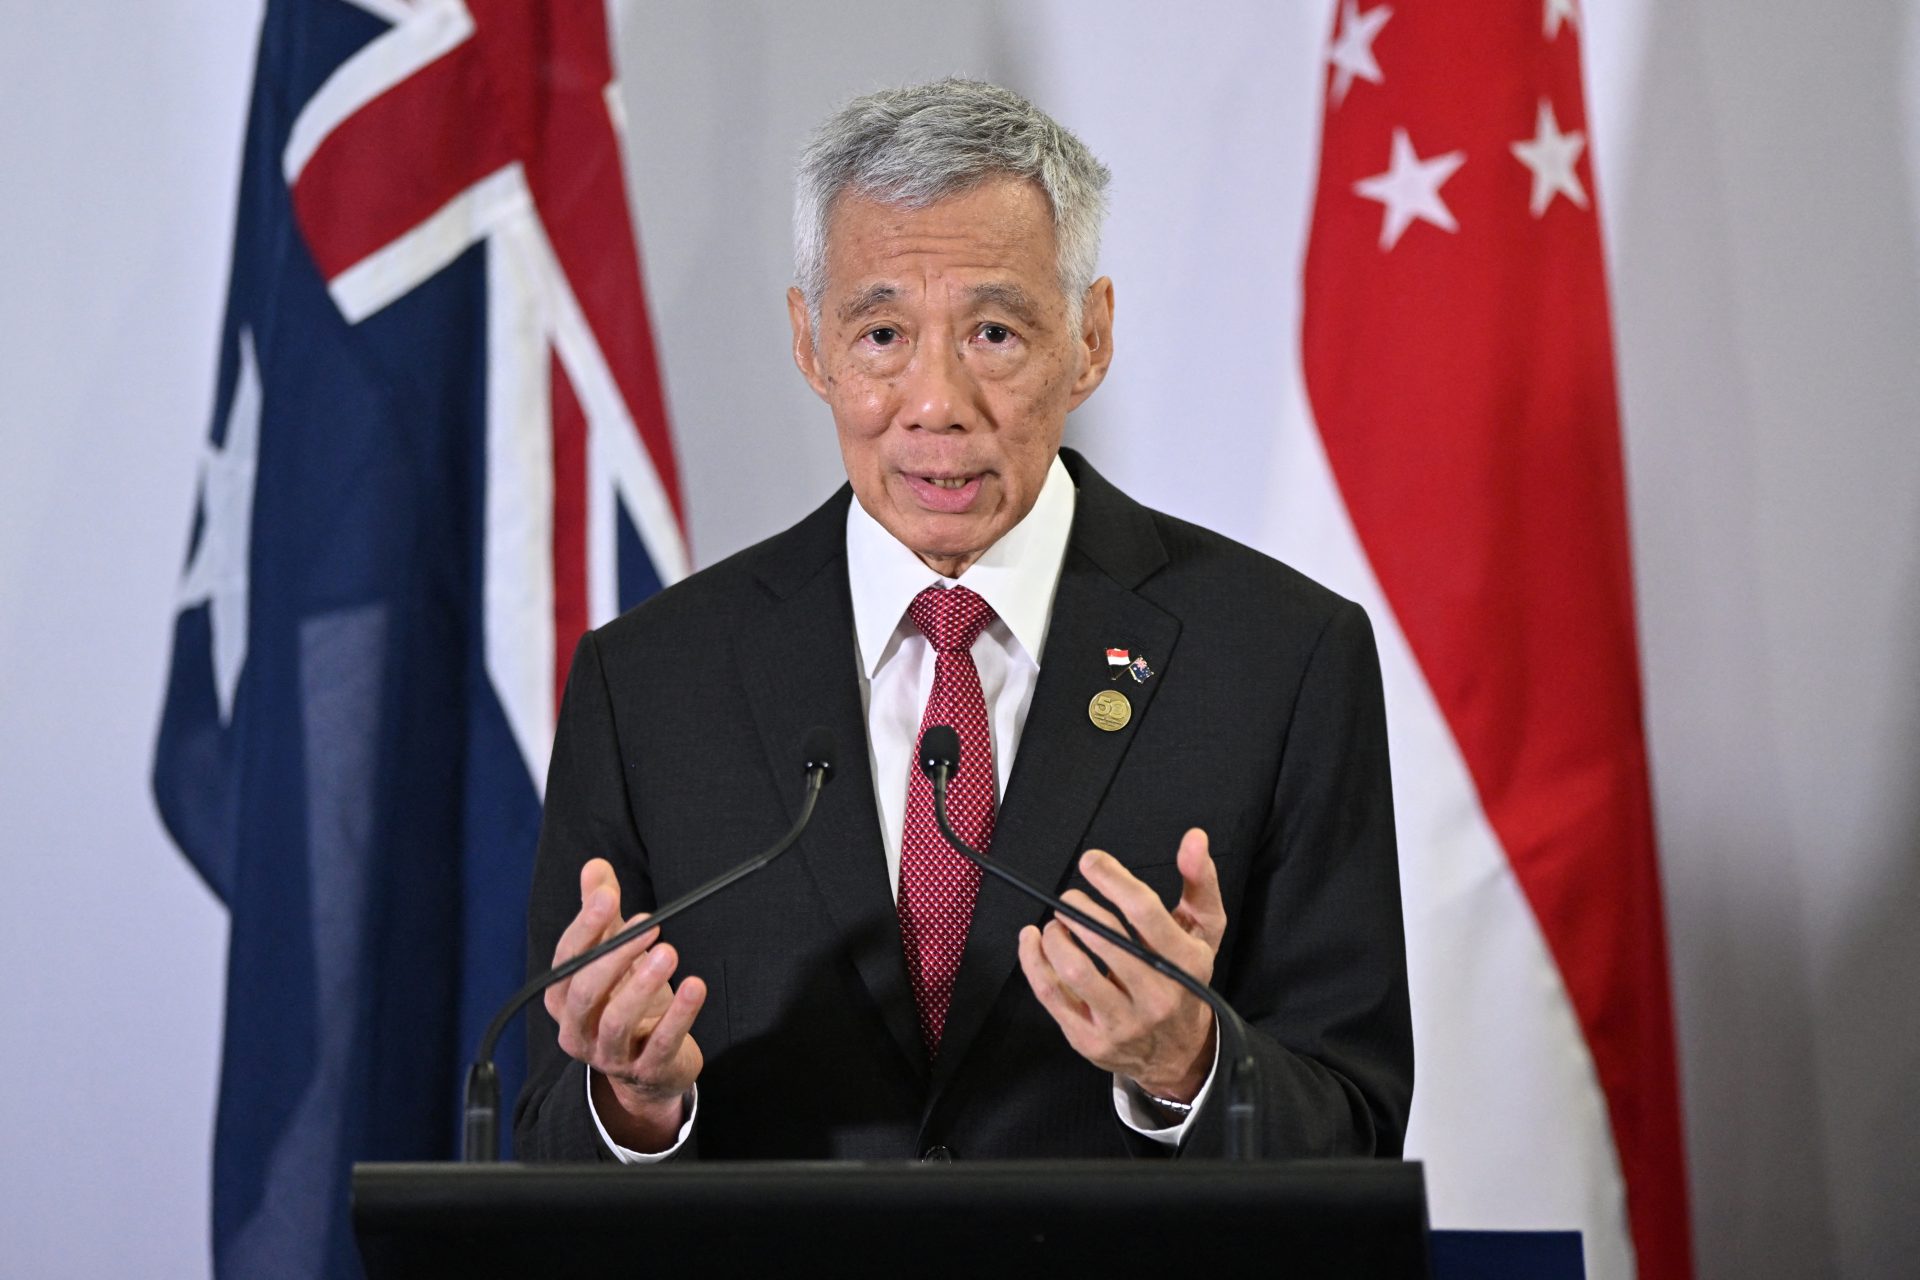 Le Premier Ministre de Singapour défend l'accord exclusif avec Taylor Swift malgré les mécontentements régionaux